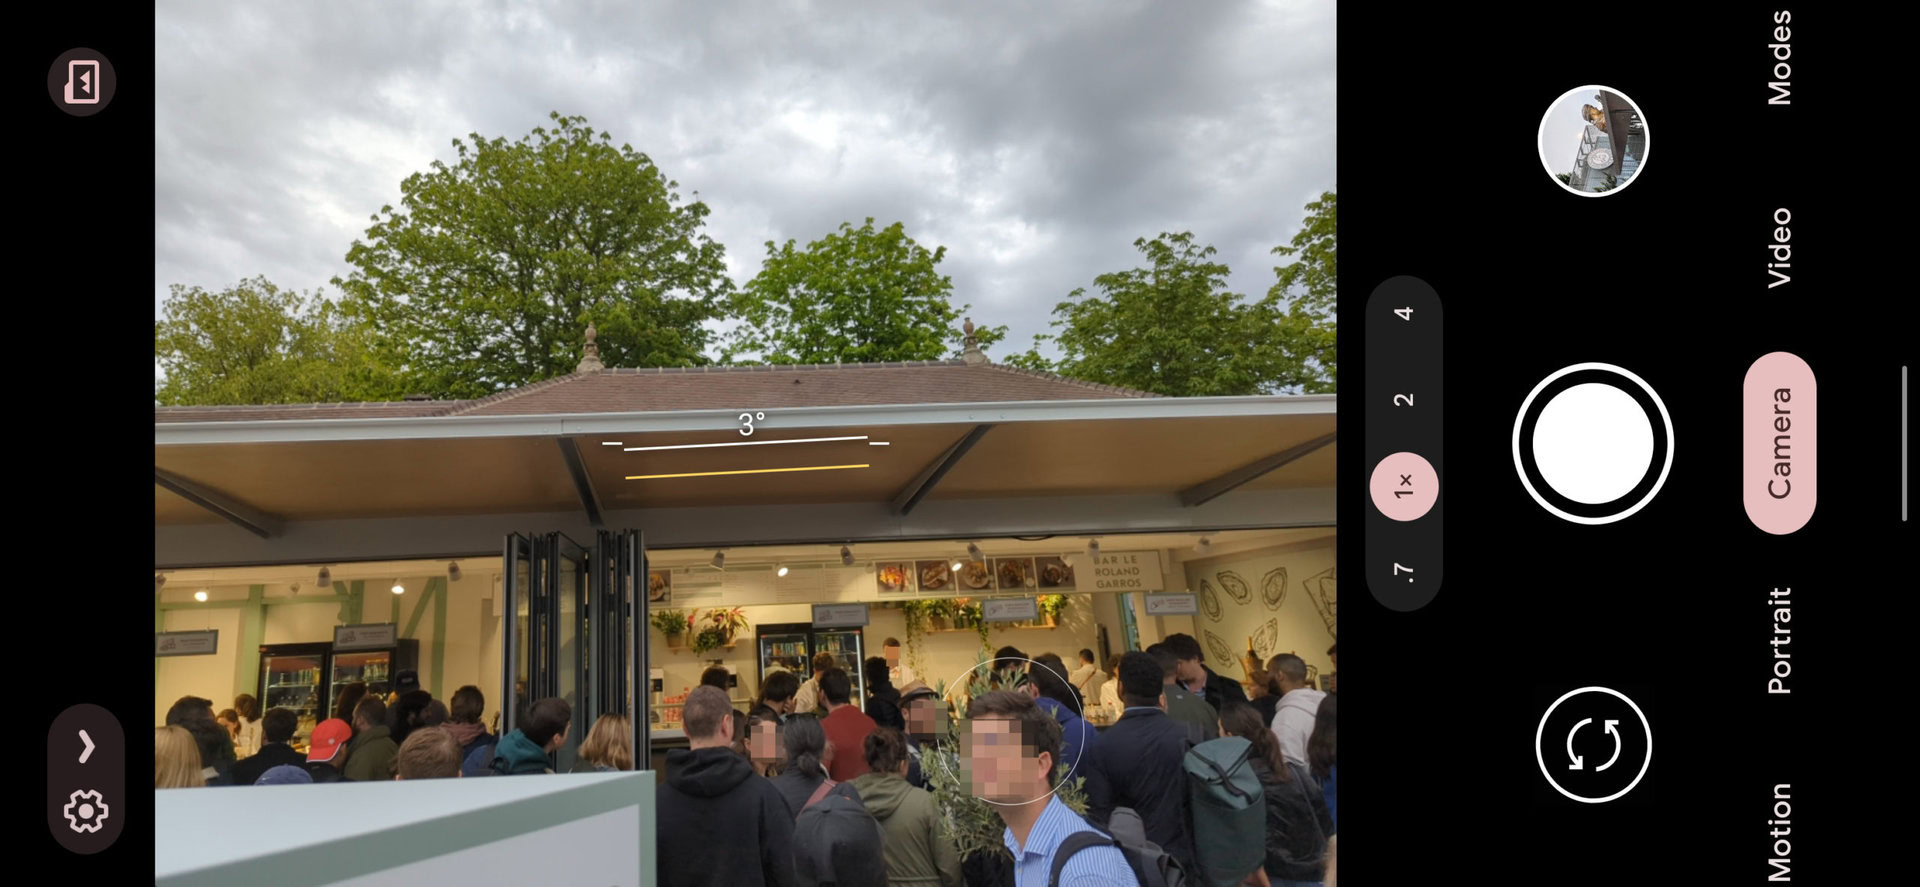 Скриншот камеры Google Pixel 6 Pro 1x, показывающий продовольственный магазин с длинной очередью